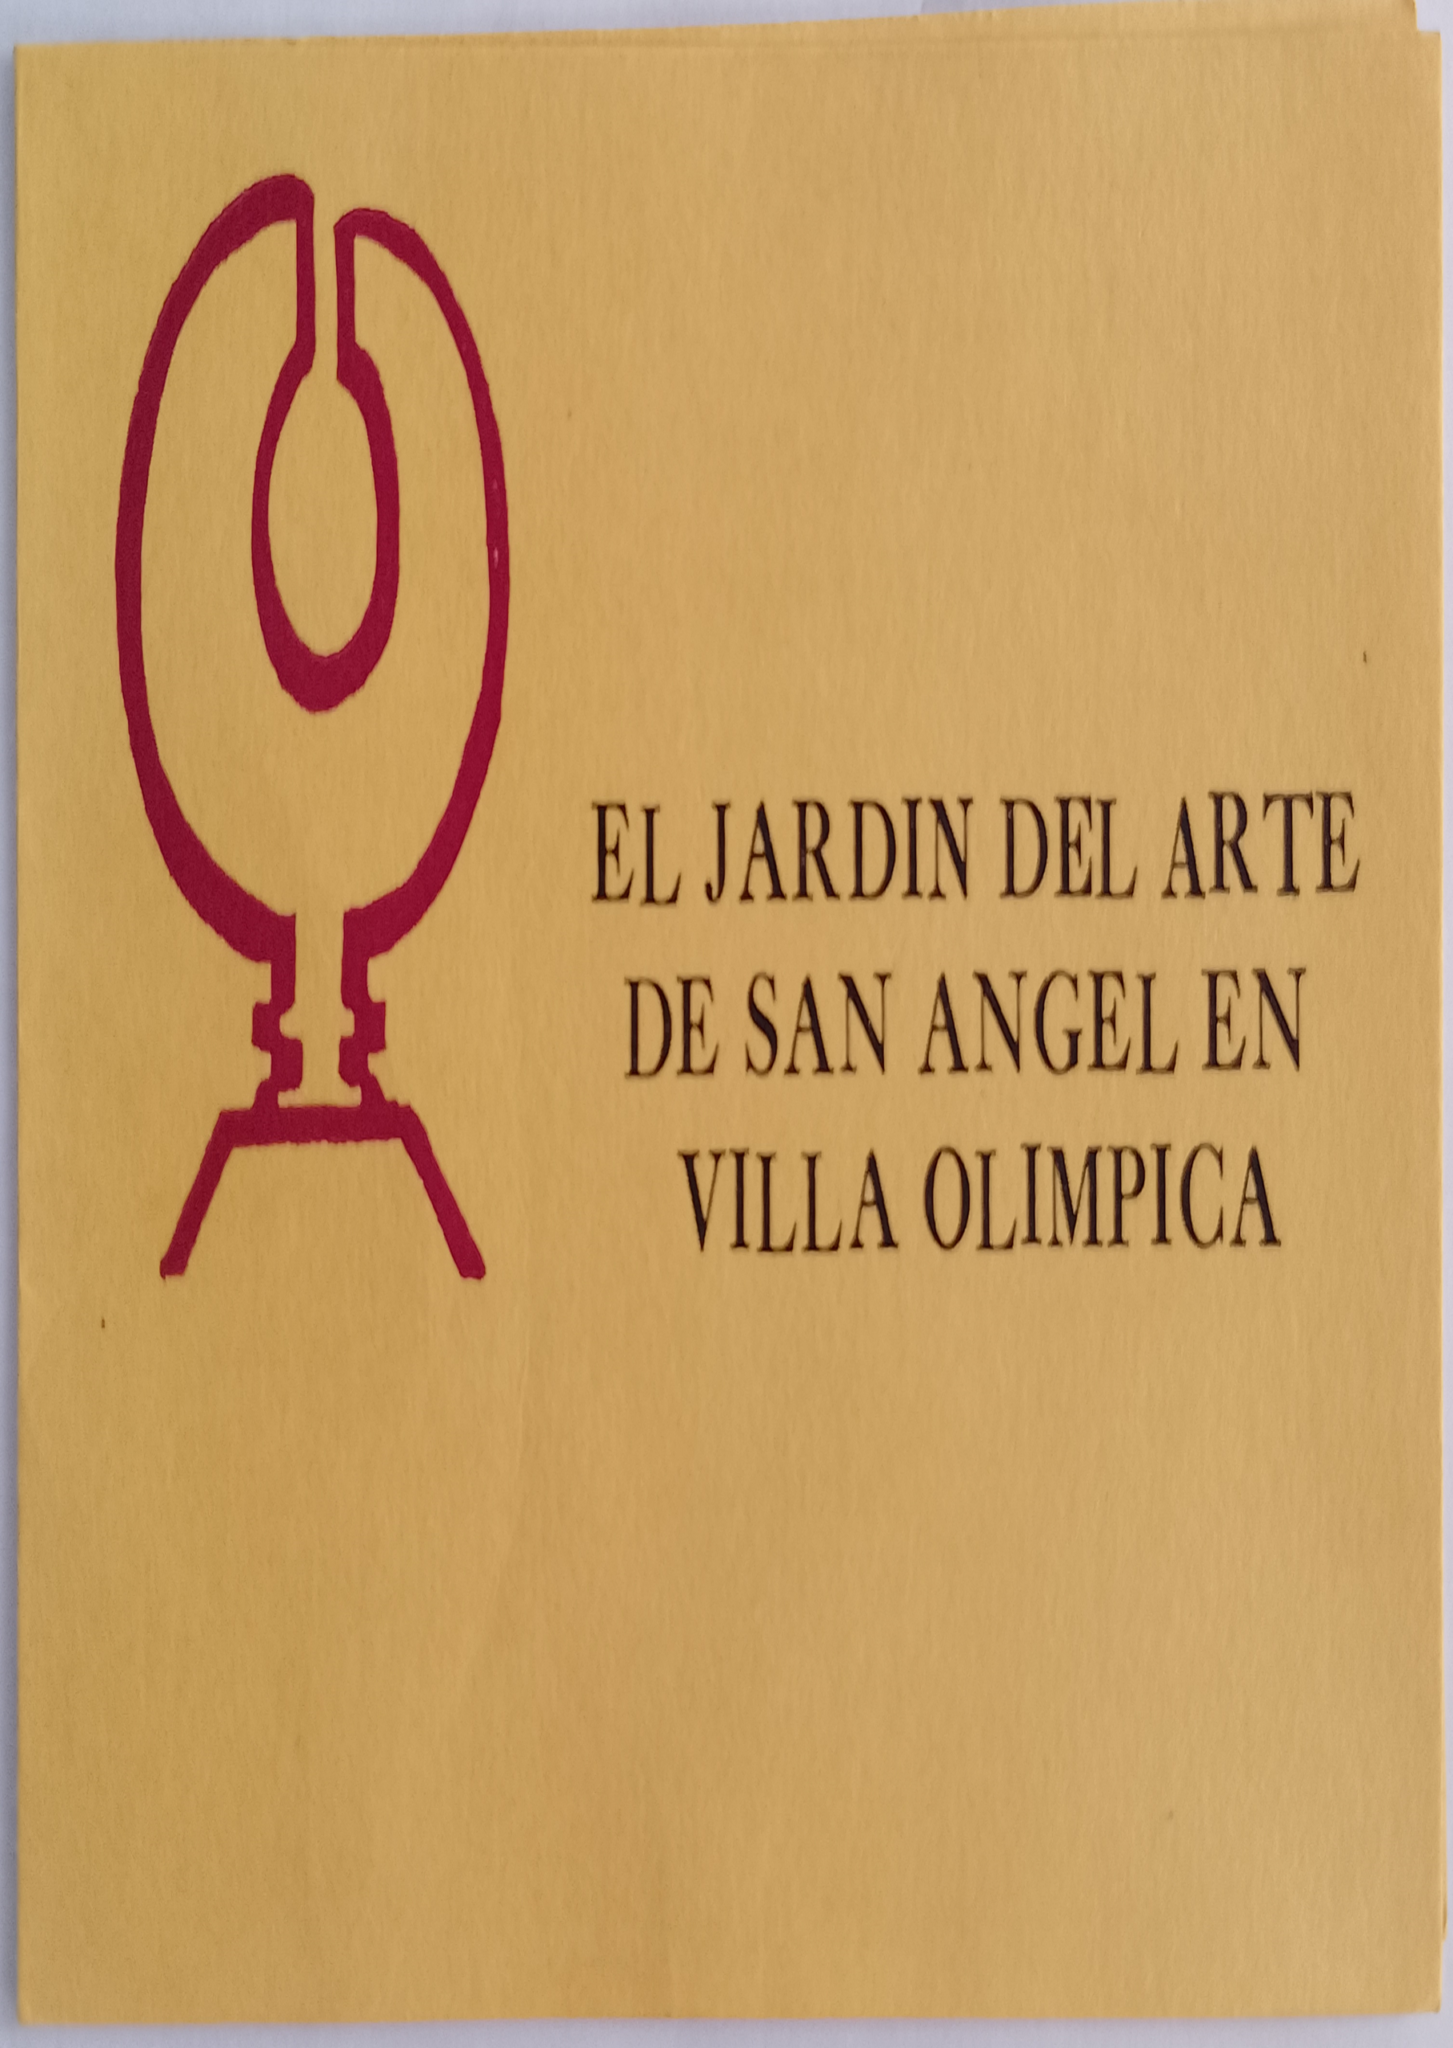 1968 feb 4 Jardin del arte de san angel (1)